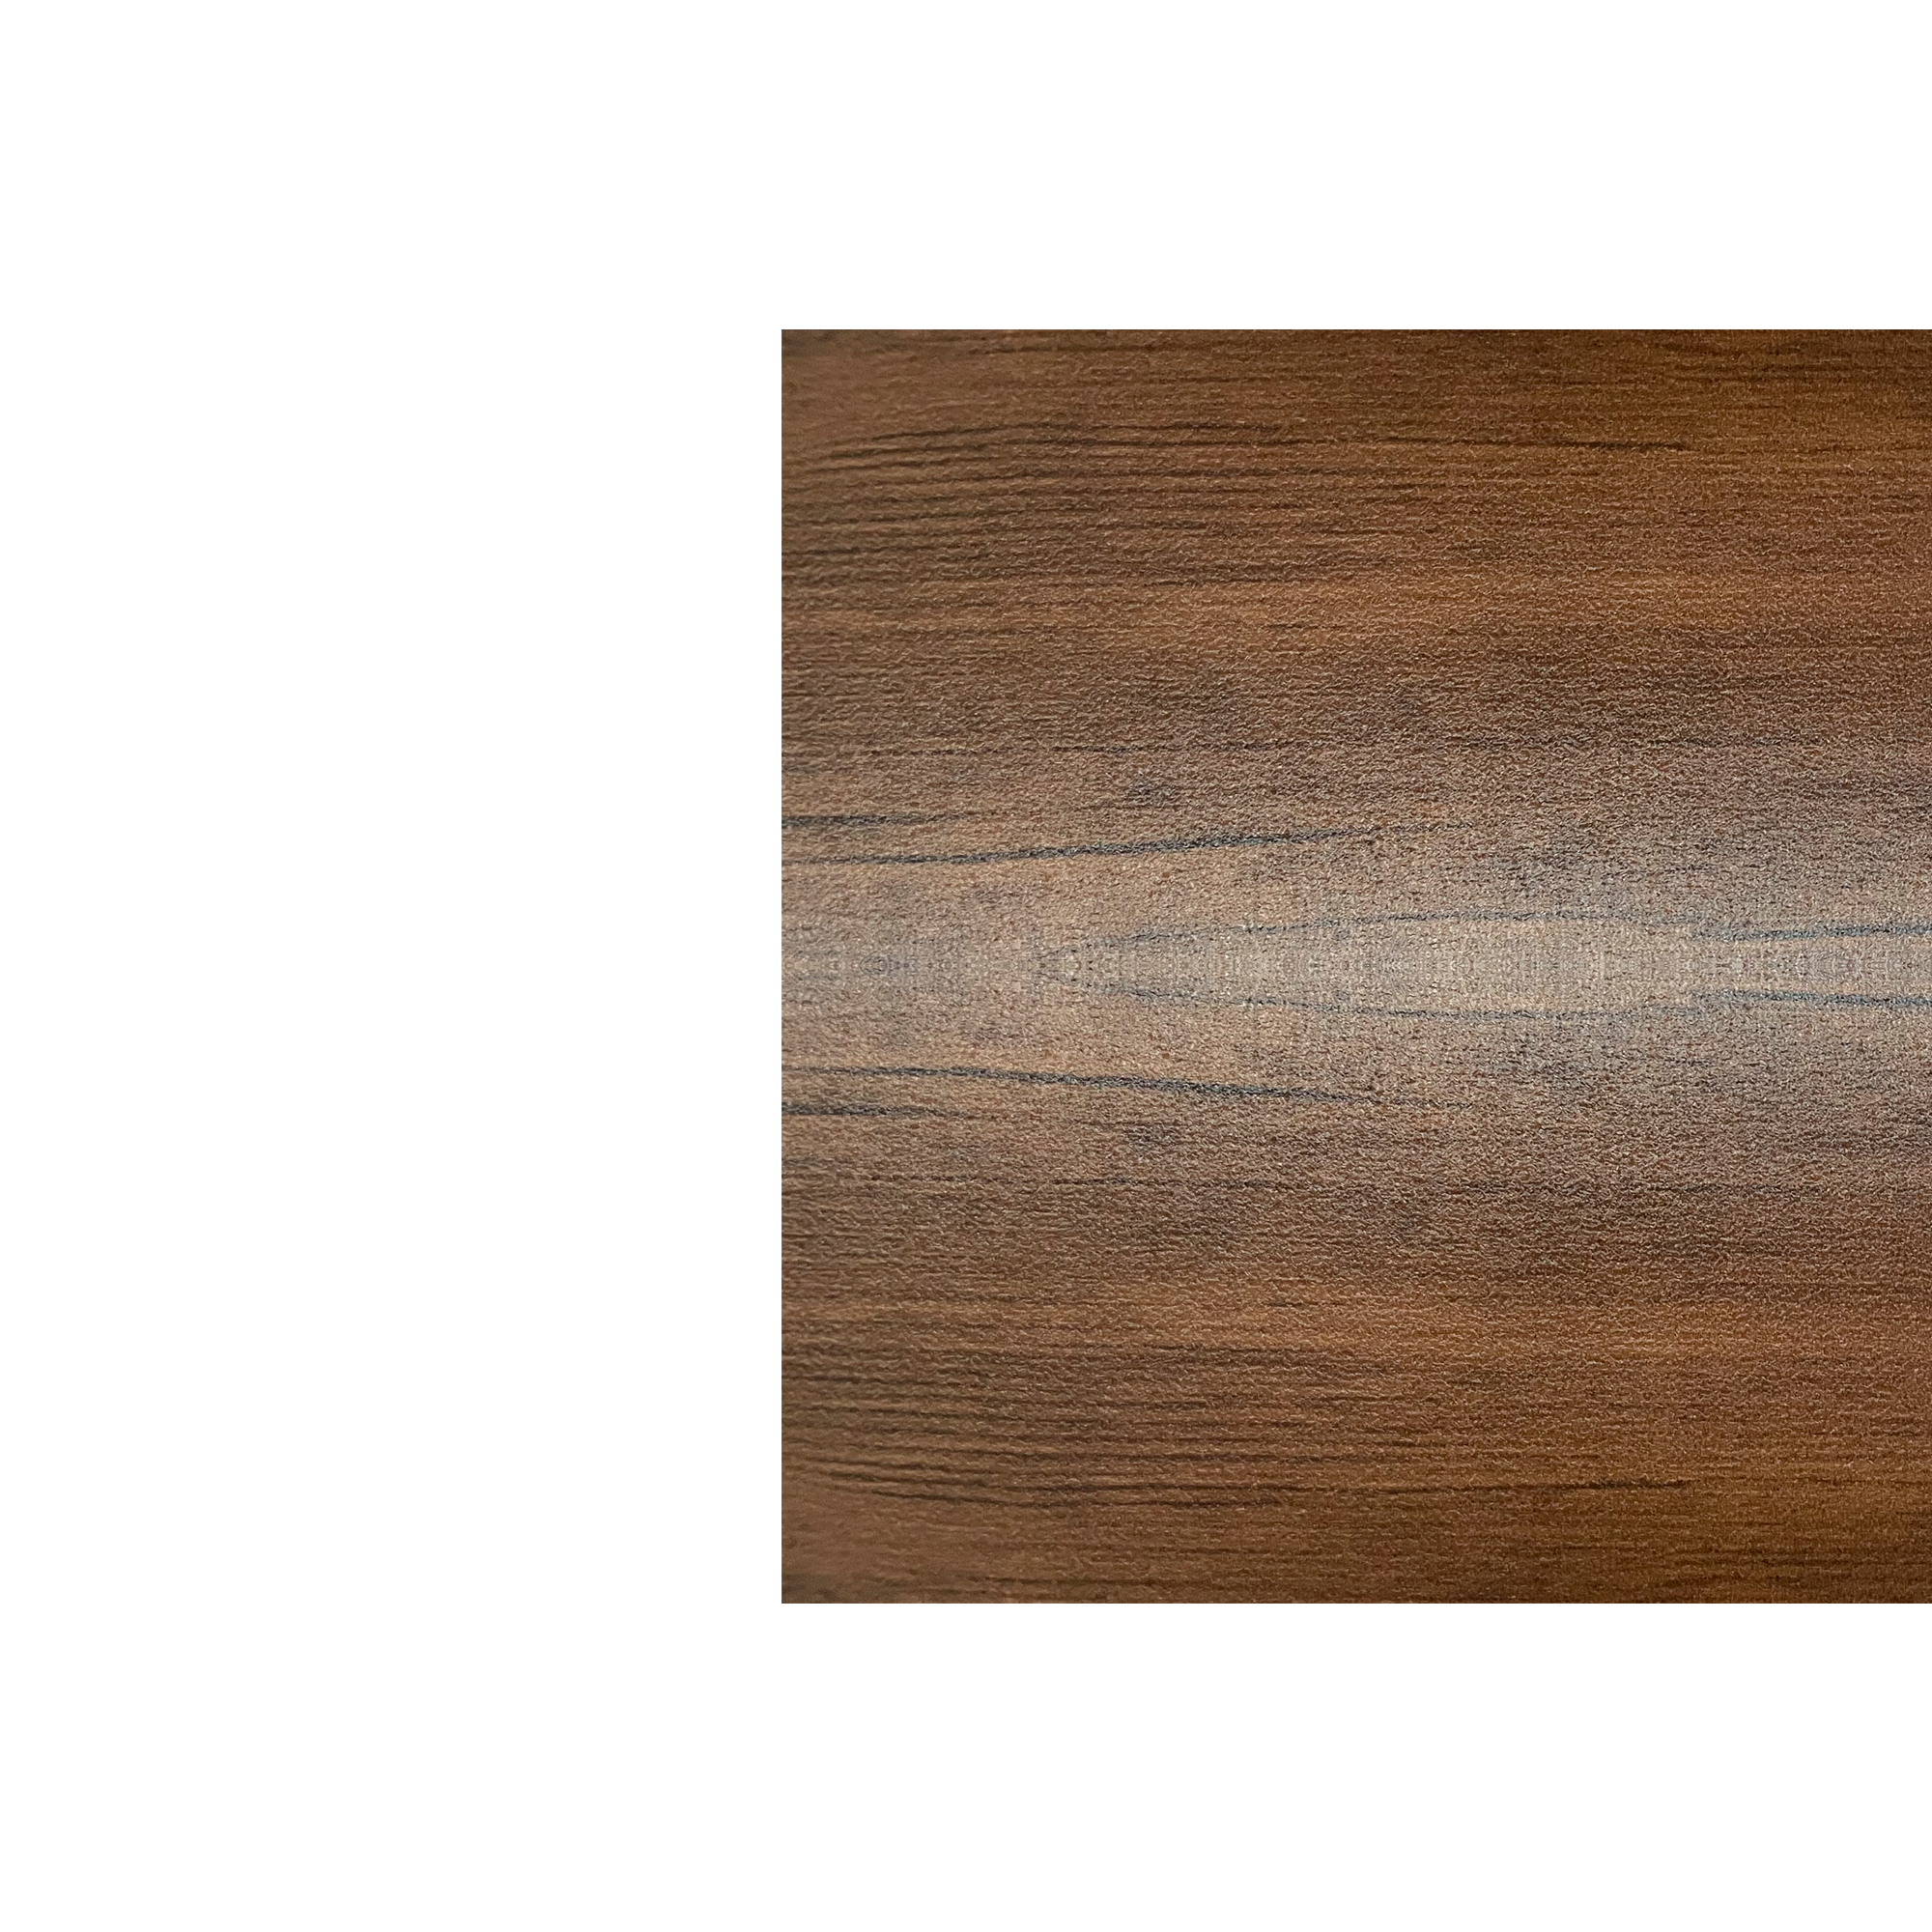 Планка угла внутреннего сложного Брусnika Античный дуб 0,45 мм Printech Доборные элементы для сайдинга Кровля Сервис